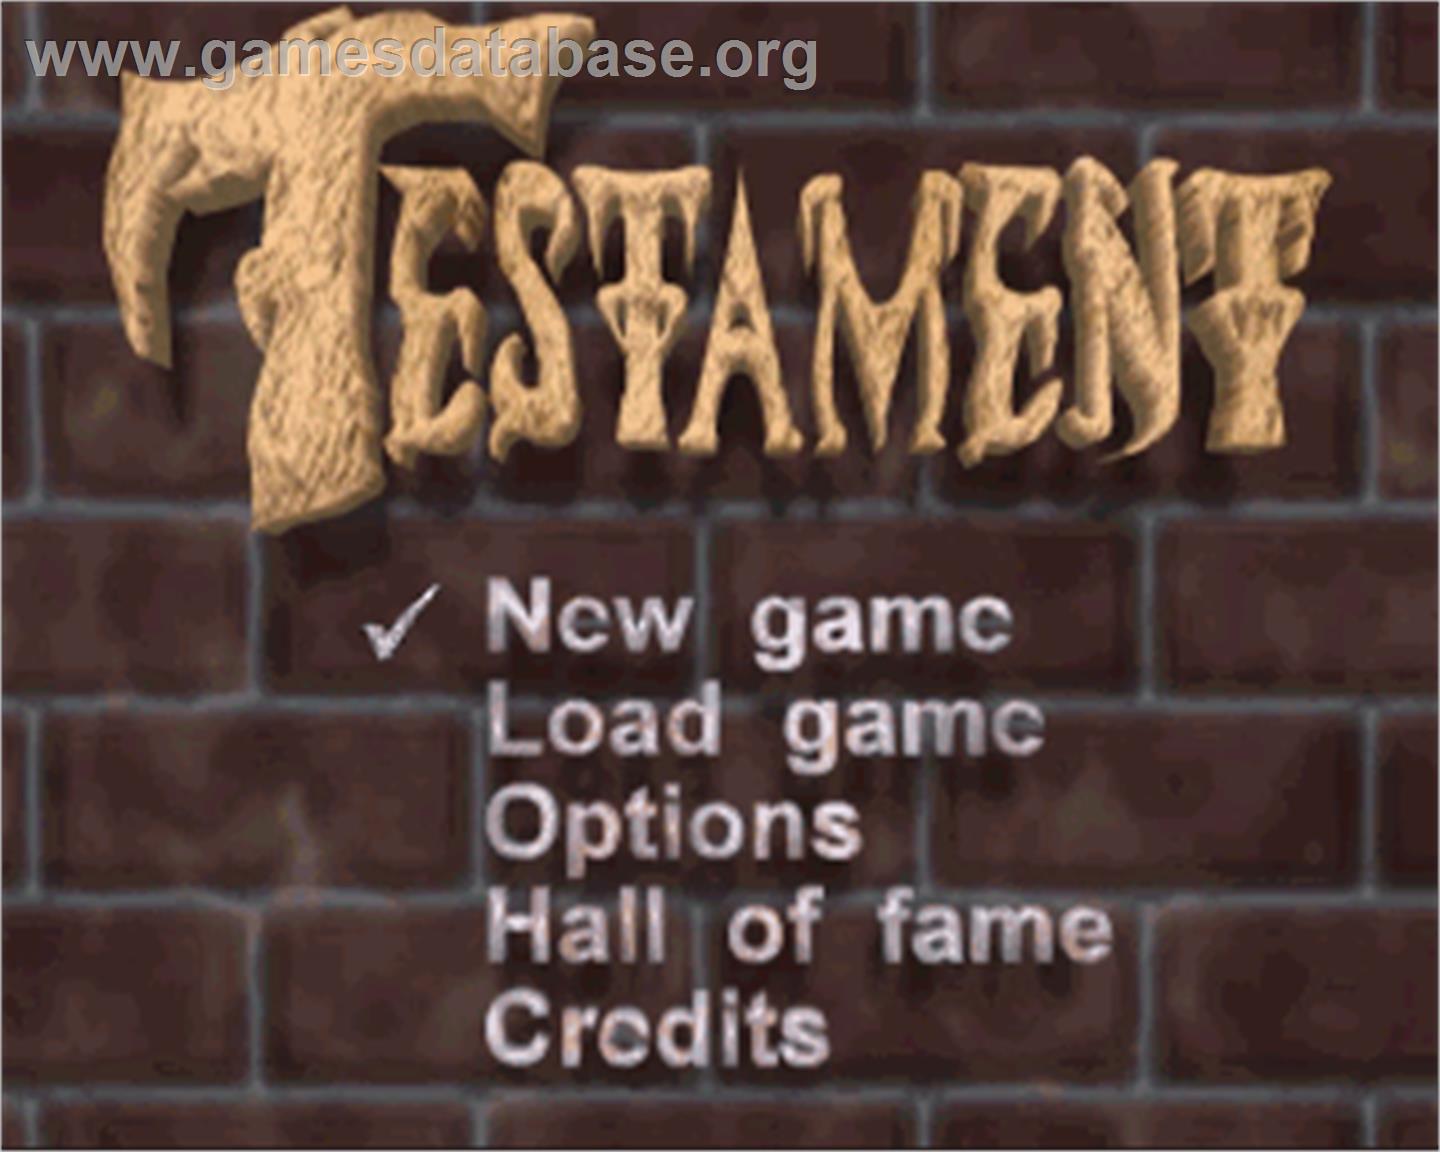 Testament - Commodore Amiga - Artwork - In Game